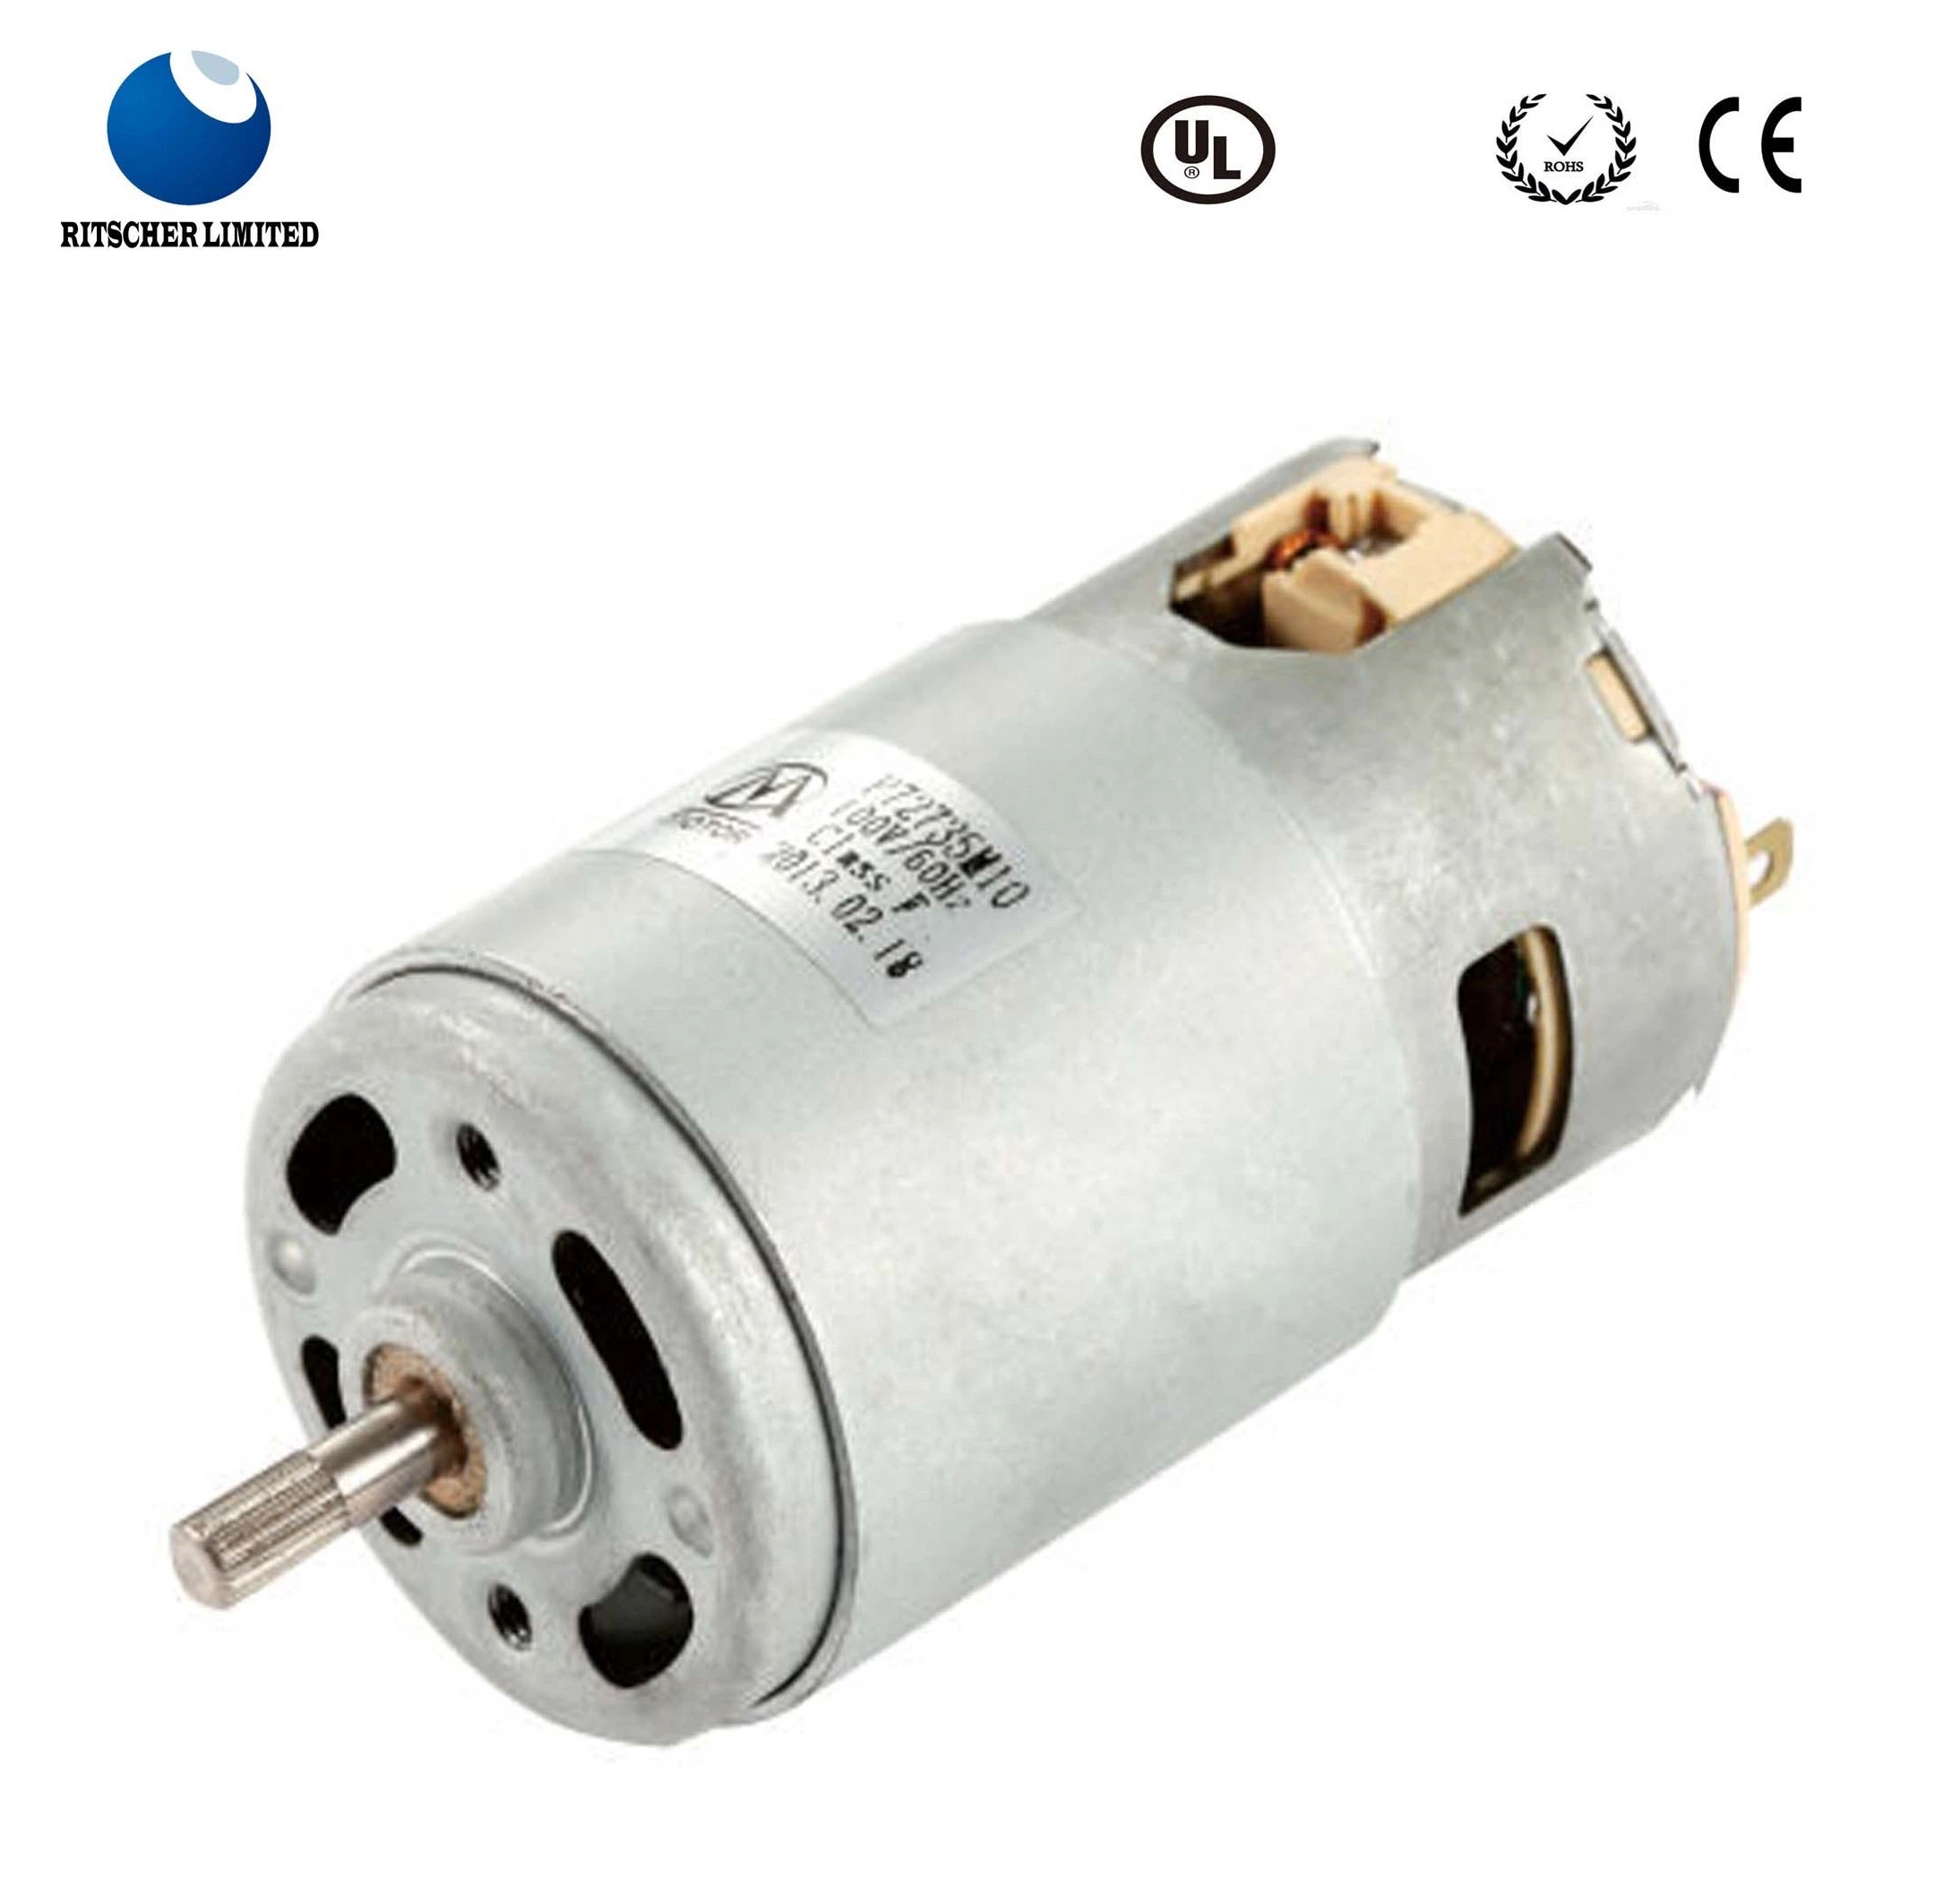 Potente motor eléctrico DC para la gama de electrodomésticos/campana purificador de aire/secador de manos